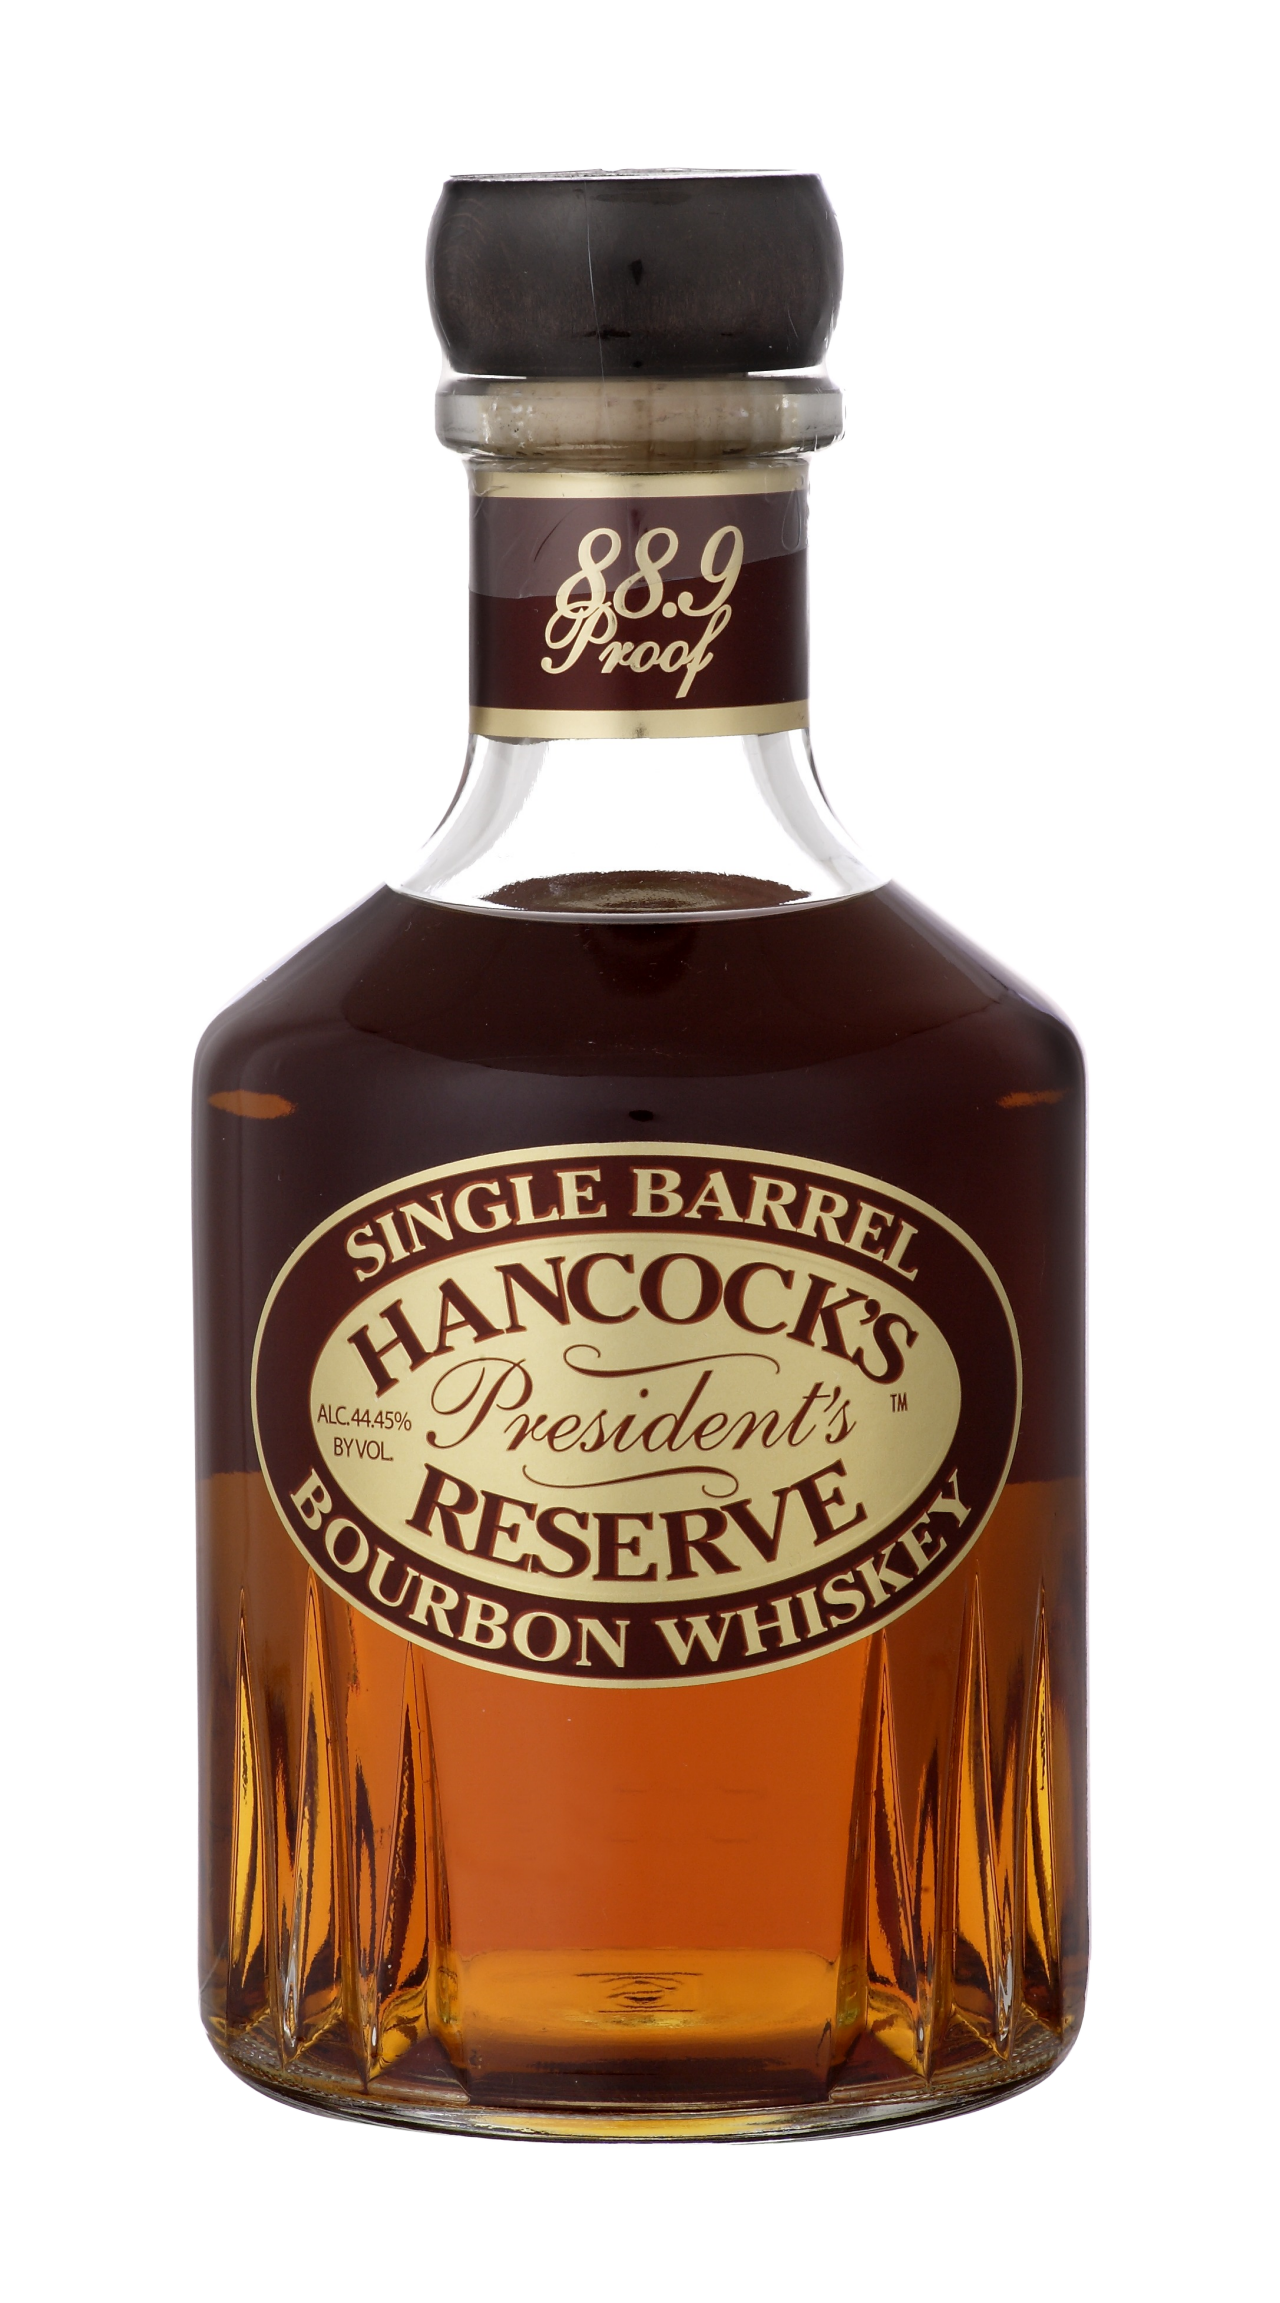 Hancock's President's Reserve Bottle